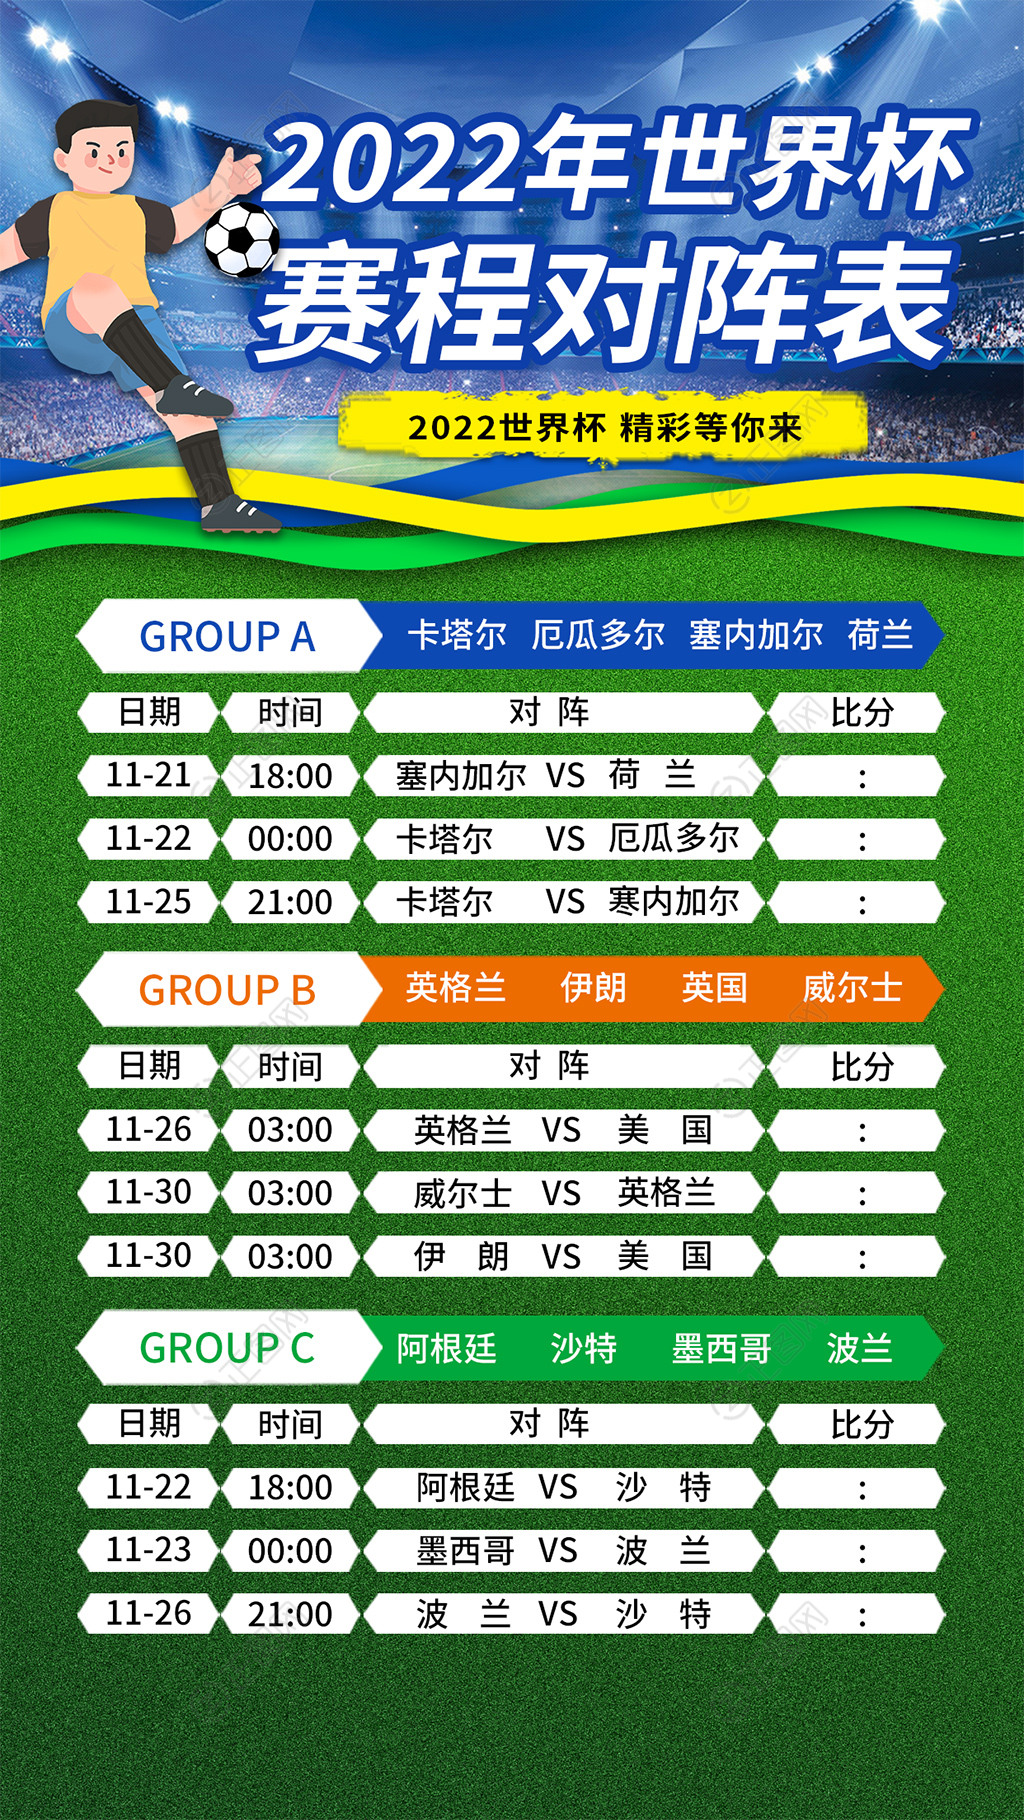 2022年世界杯赛程表